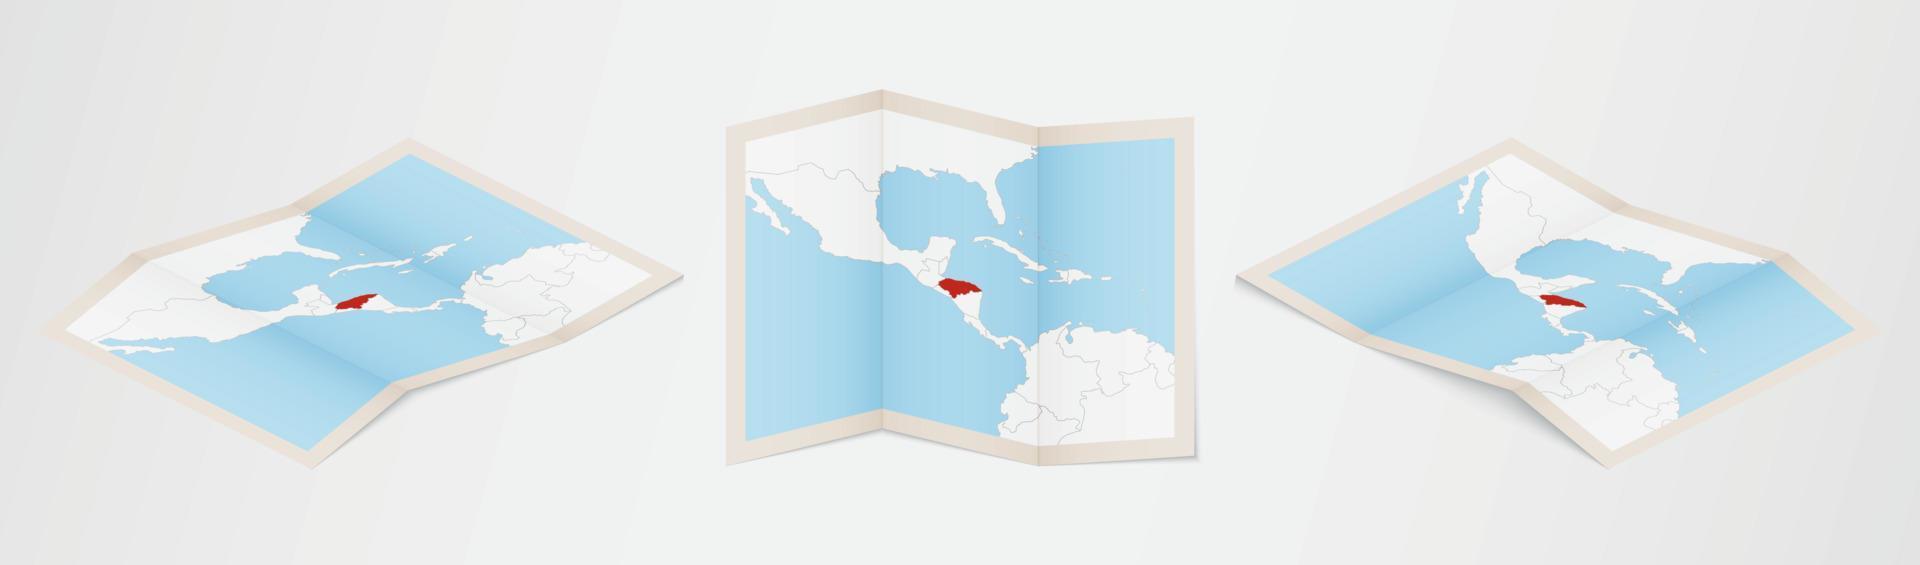 Faltkarte von Honduras in drei verschiedenen Versionen. vektor